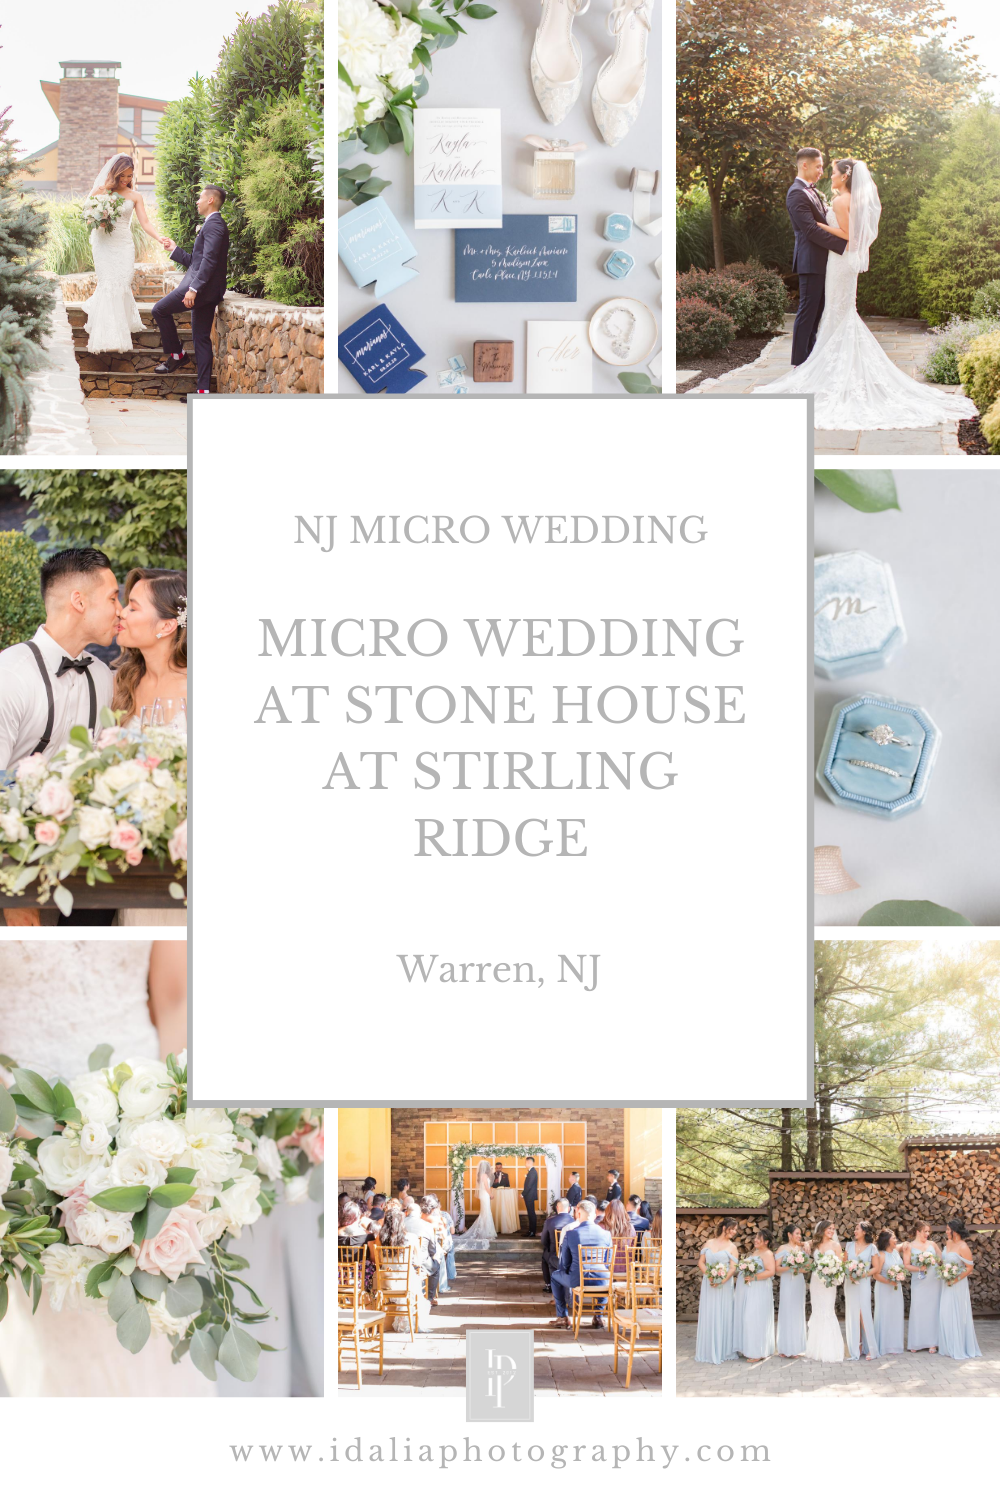 Micro wedding at Stone House at Stirling Ridge by NJ Wedding Photographers Idalia Photography